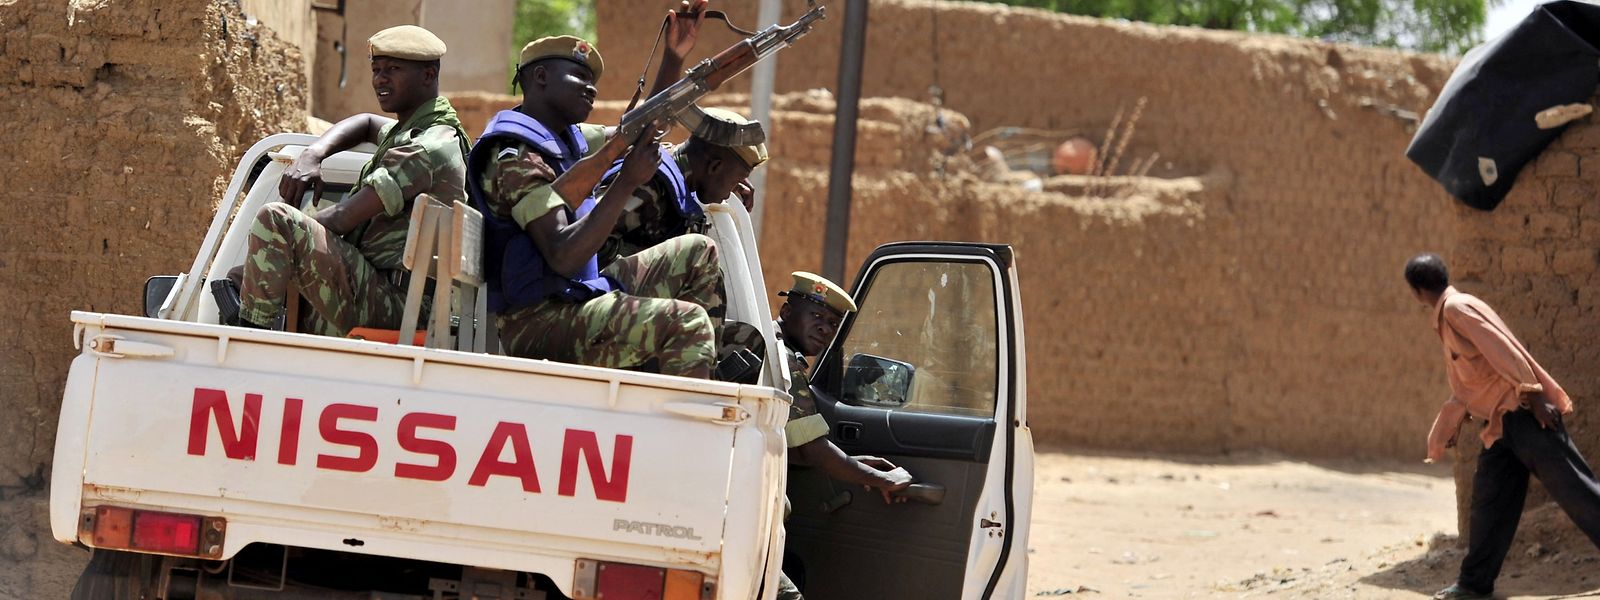 Am 23. Januar war Burkina Faso Schauplatz eines Militärputsches.